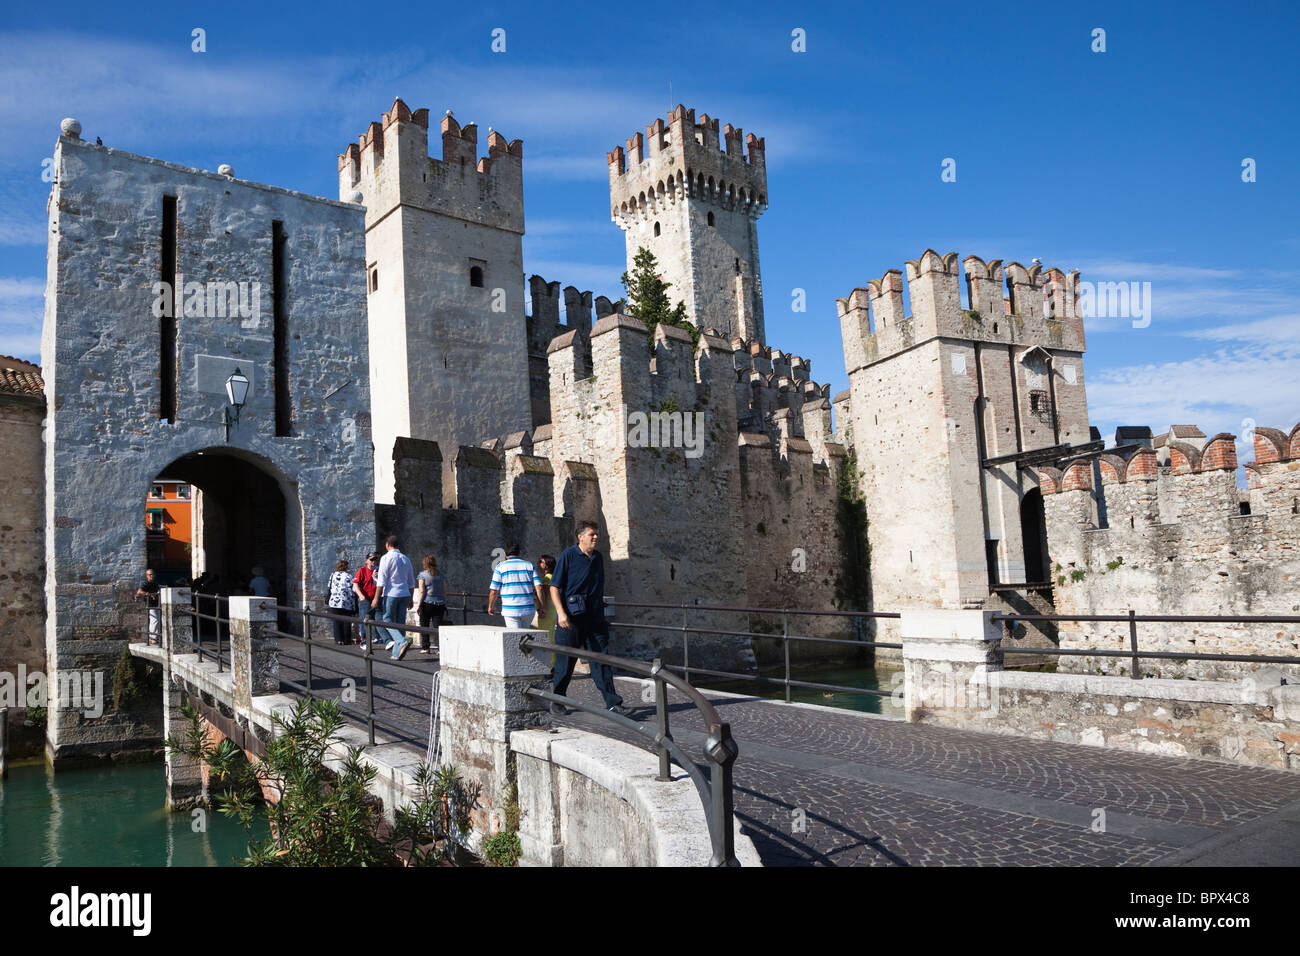 Entrée au château de Rocca Scaligera, Sirmione, lac de Garde, Italie Banque D'Images